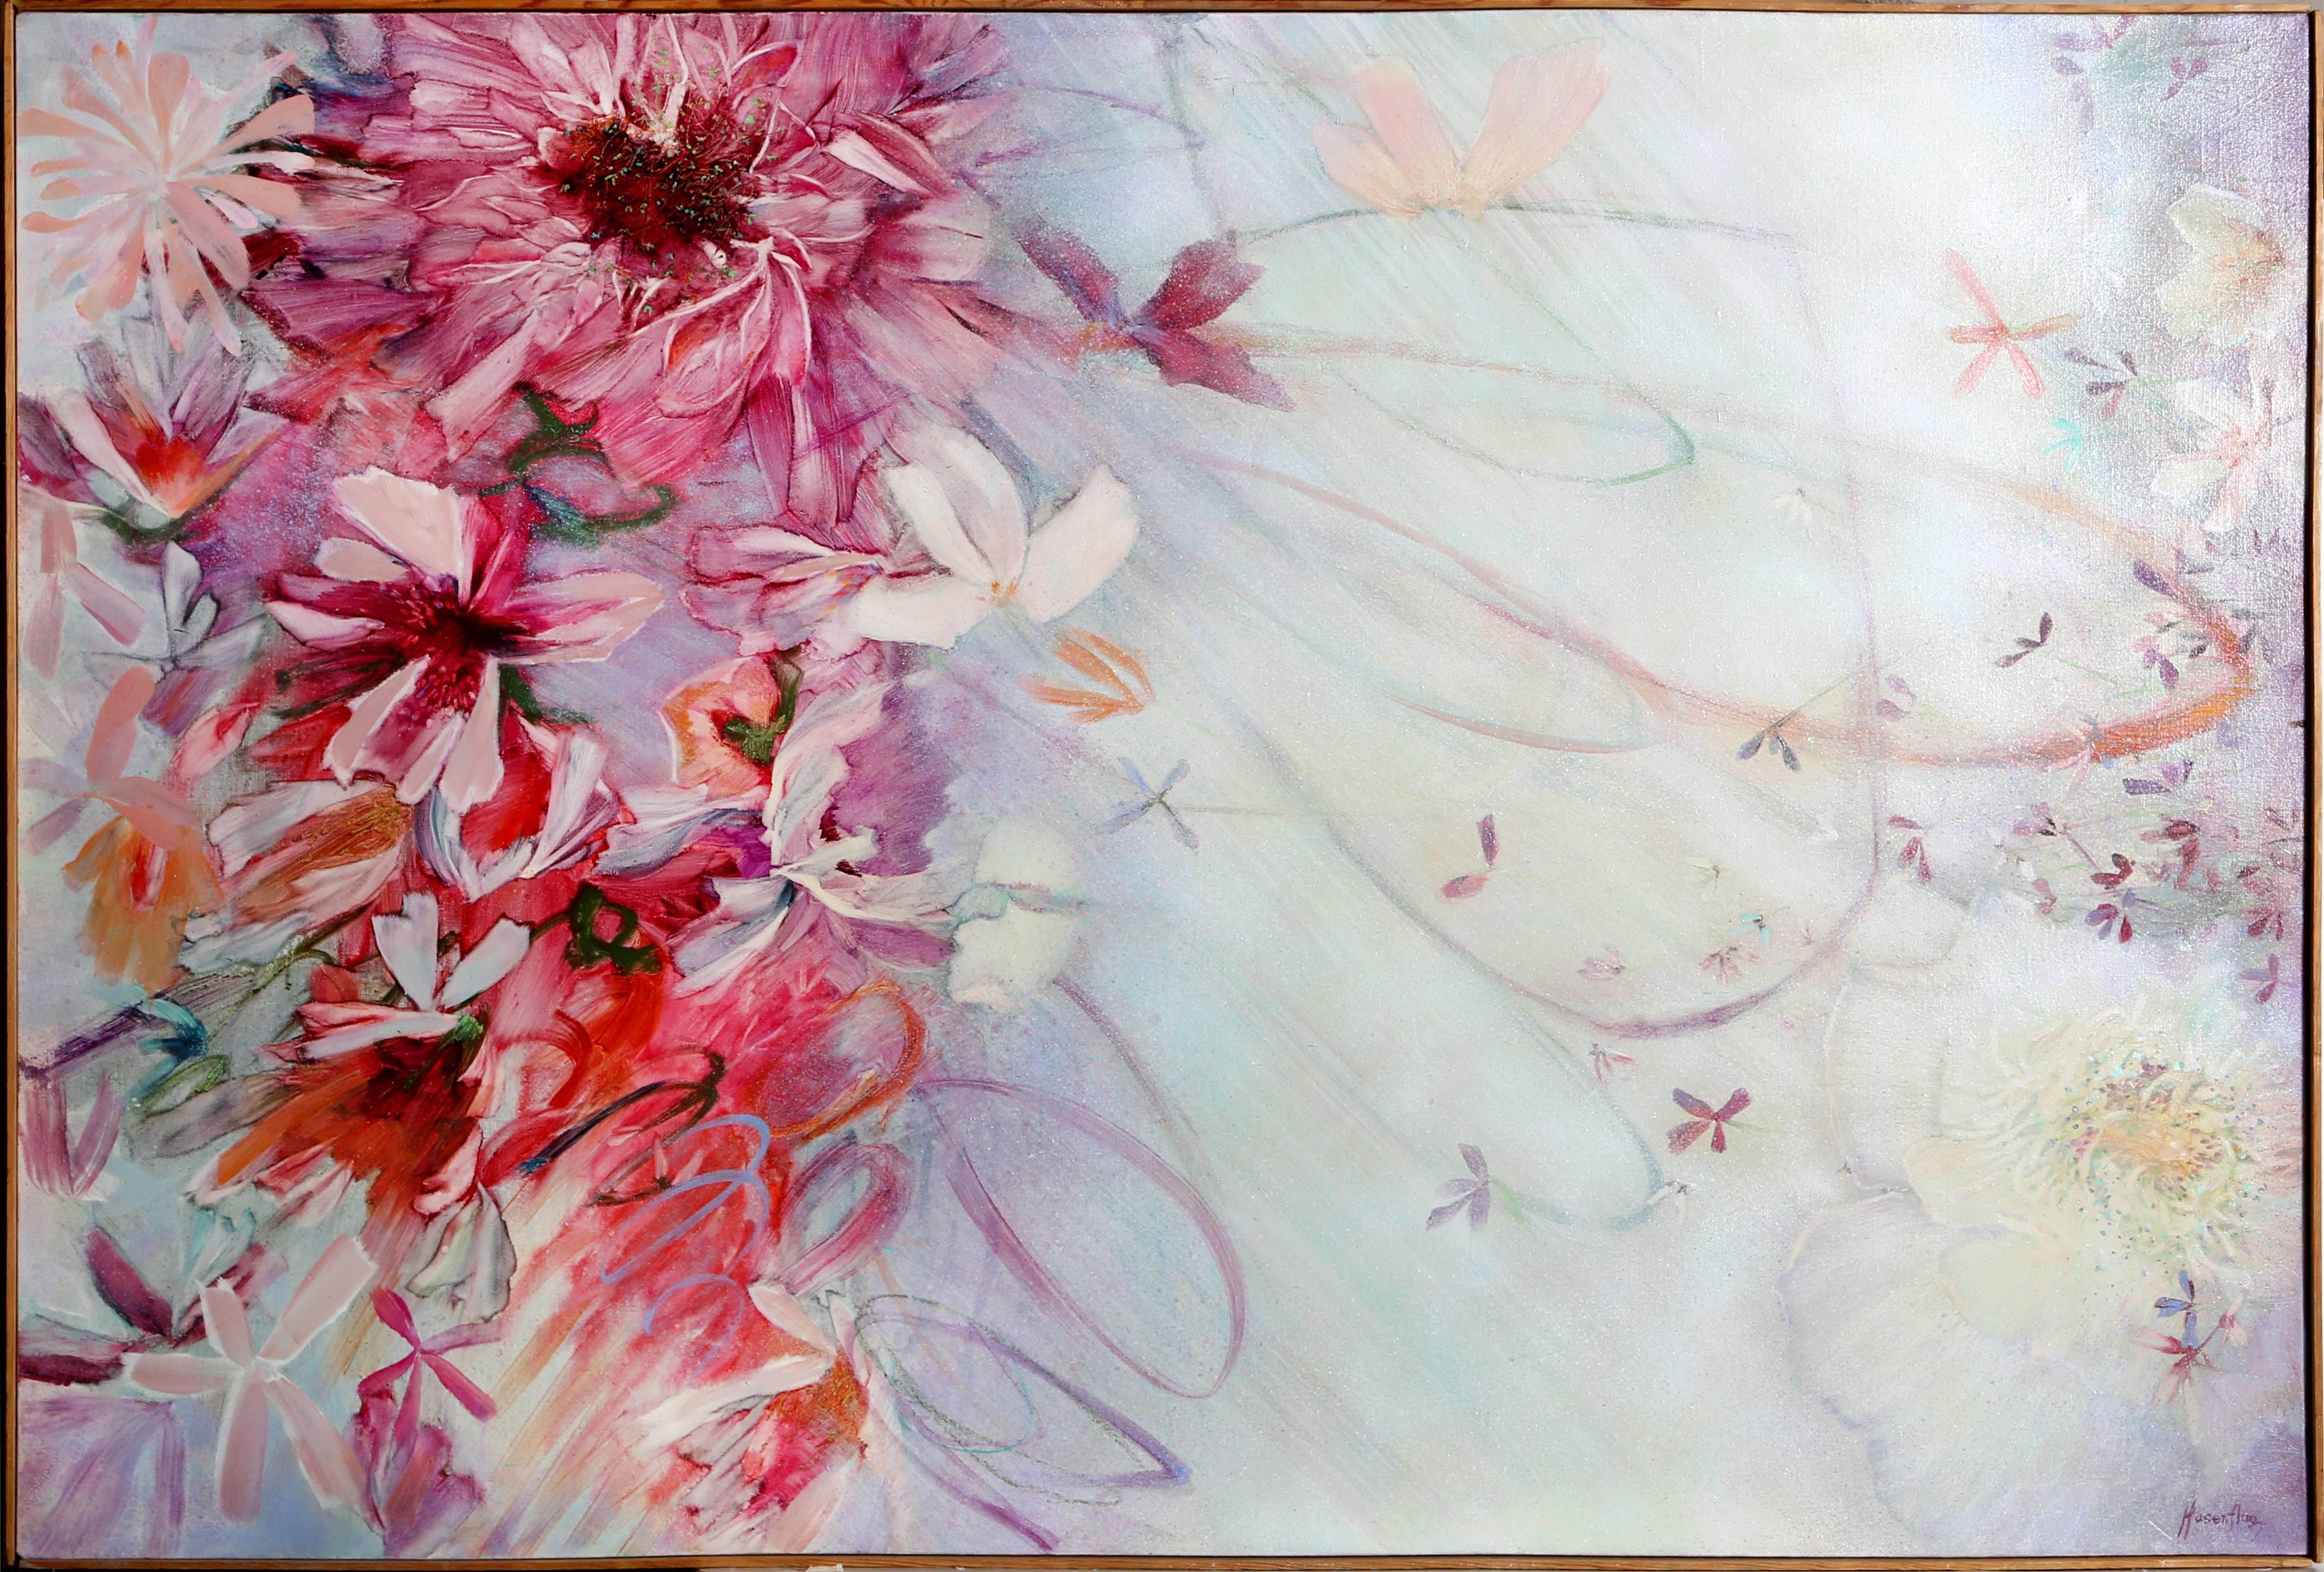 Artistics : Florence Hasenflug, Américaine (1914 - 2010)
Titre : Fleurs roses
Année : circa 1970
Moyen d'expression : Huile sur toile, signée à gauche et au verso
Taille : 44 x 66 in. (111.76 x 167.64 cm)
Taille du cadre : 44.5 x 67 pouces